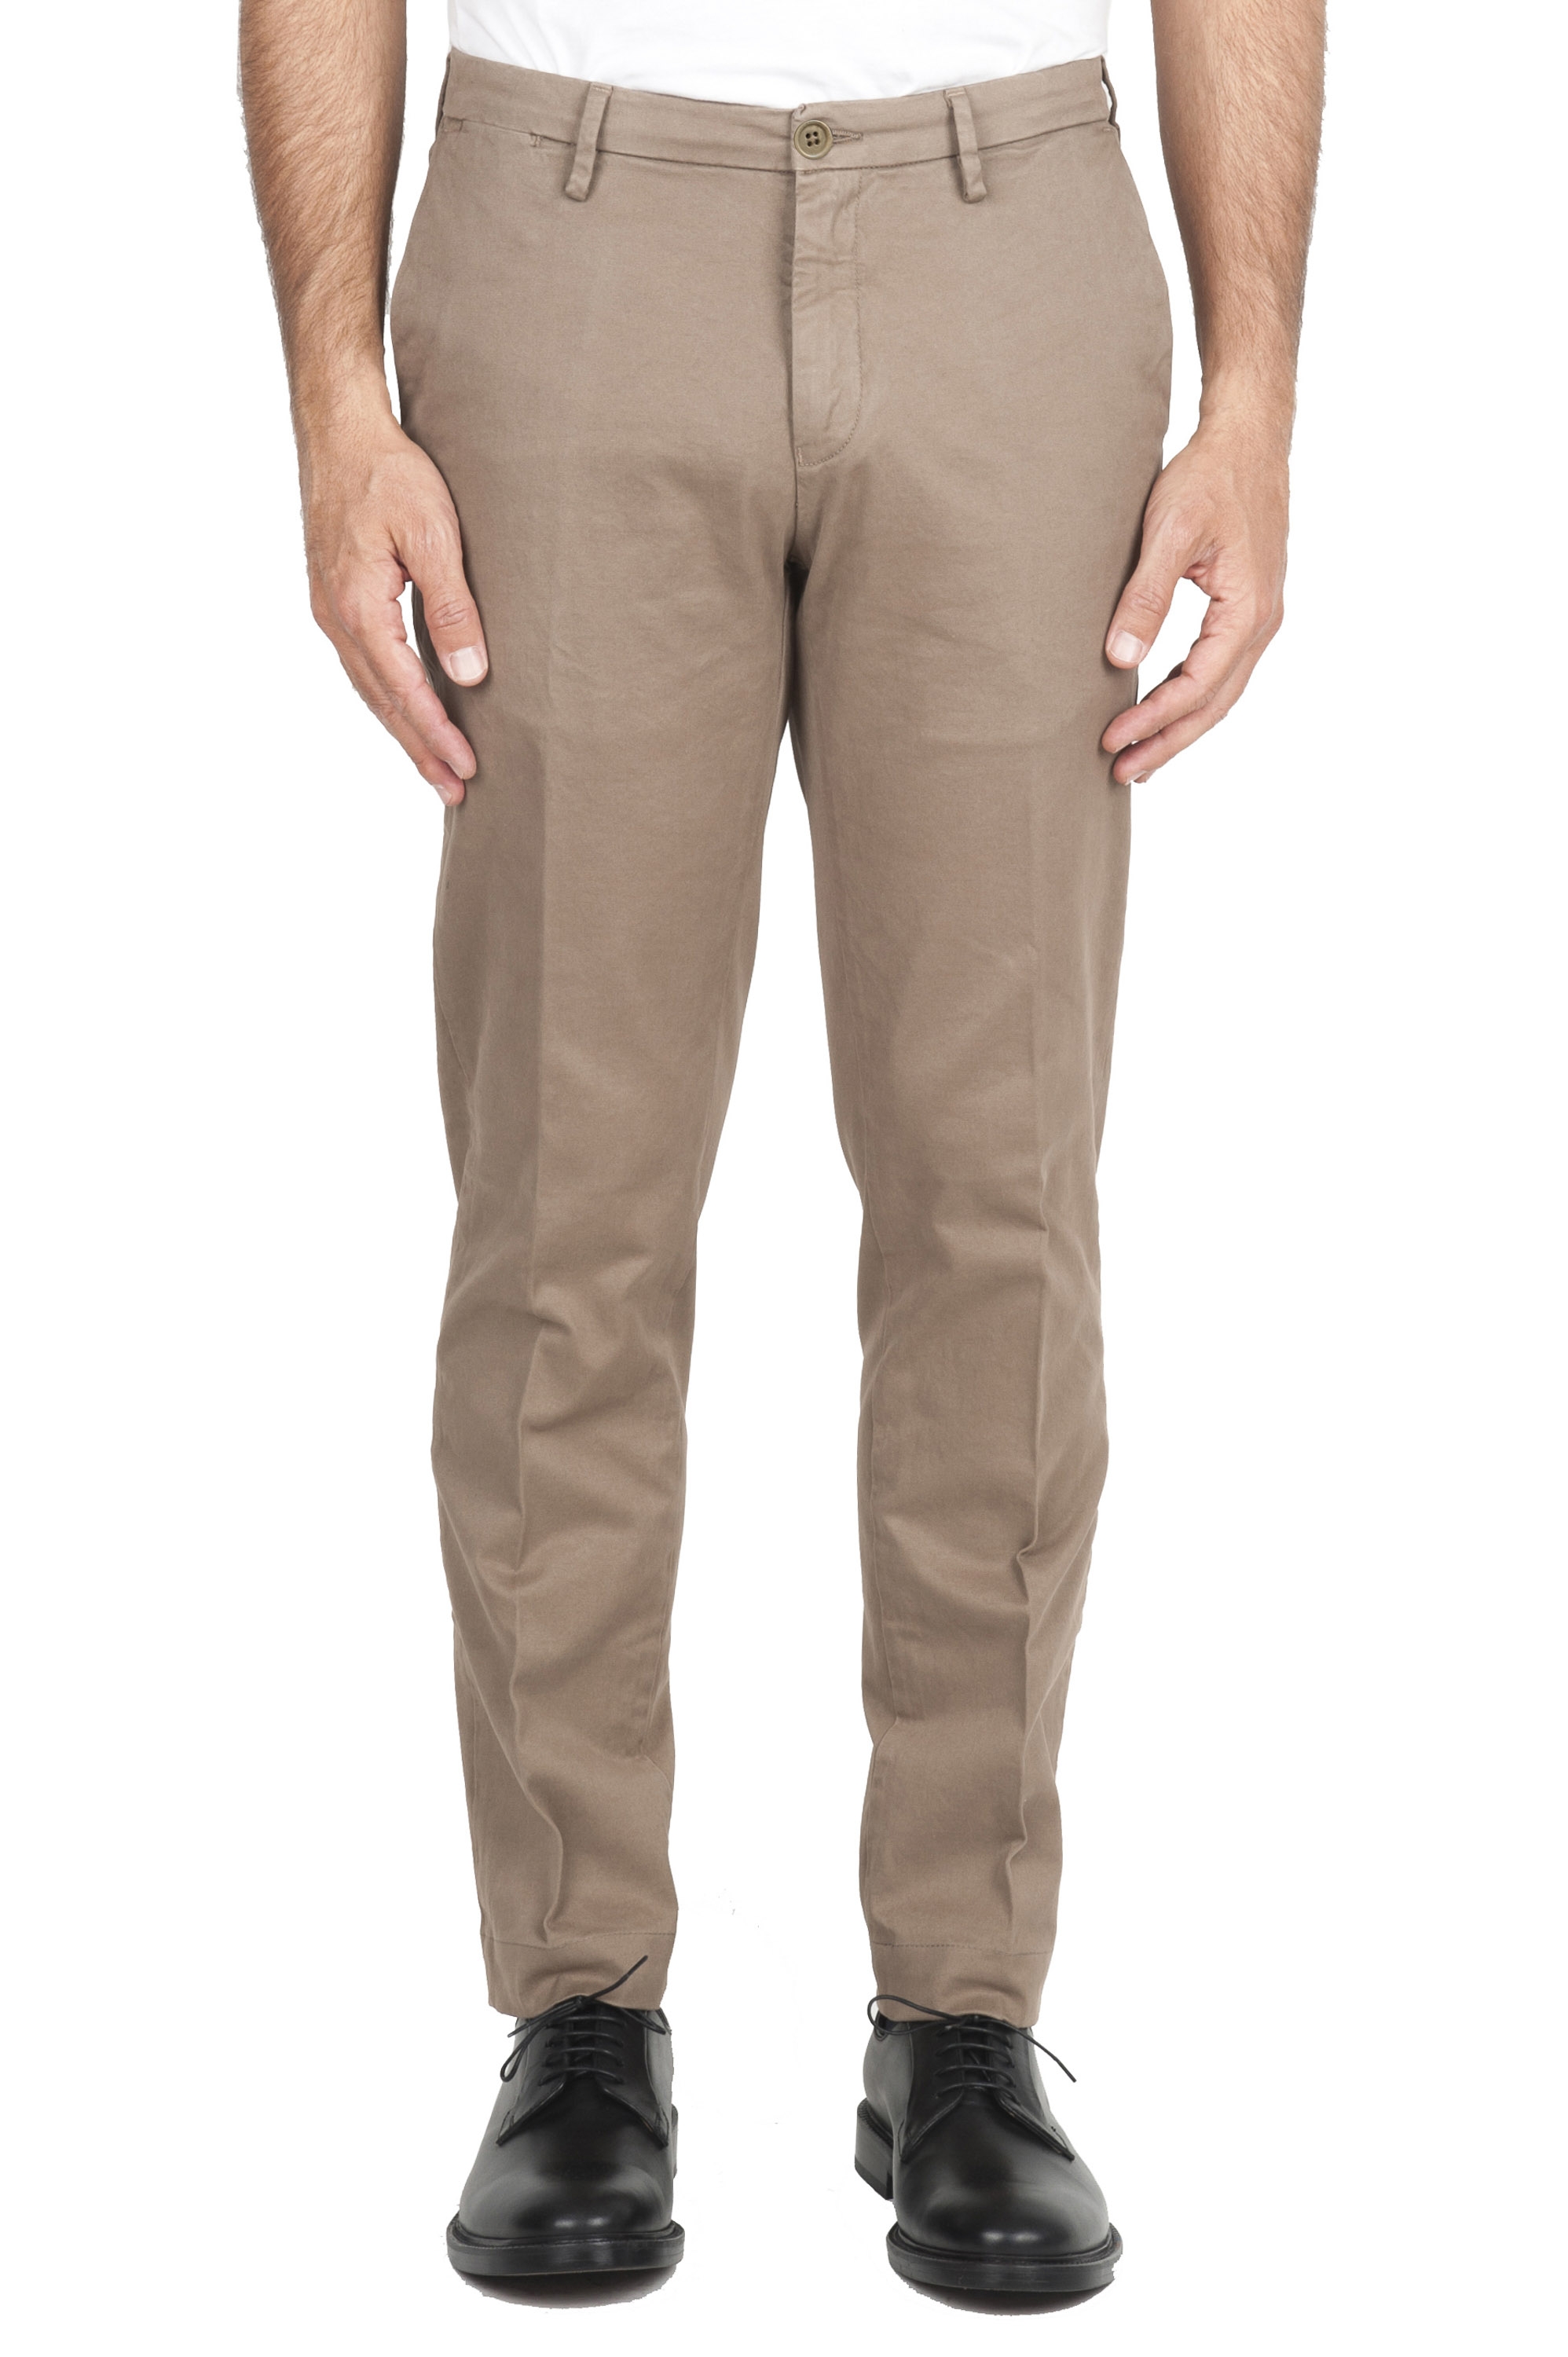 SBU 02919_2020AW Pantalones chinos clásicos en algodón elástico beige 01